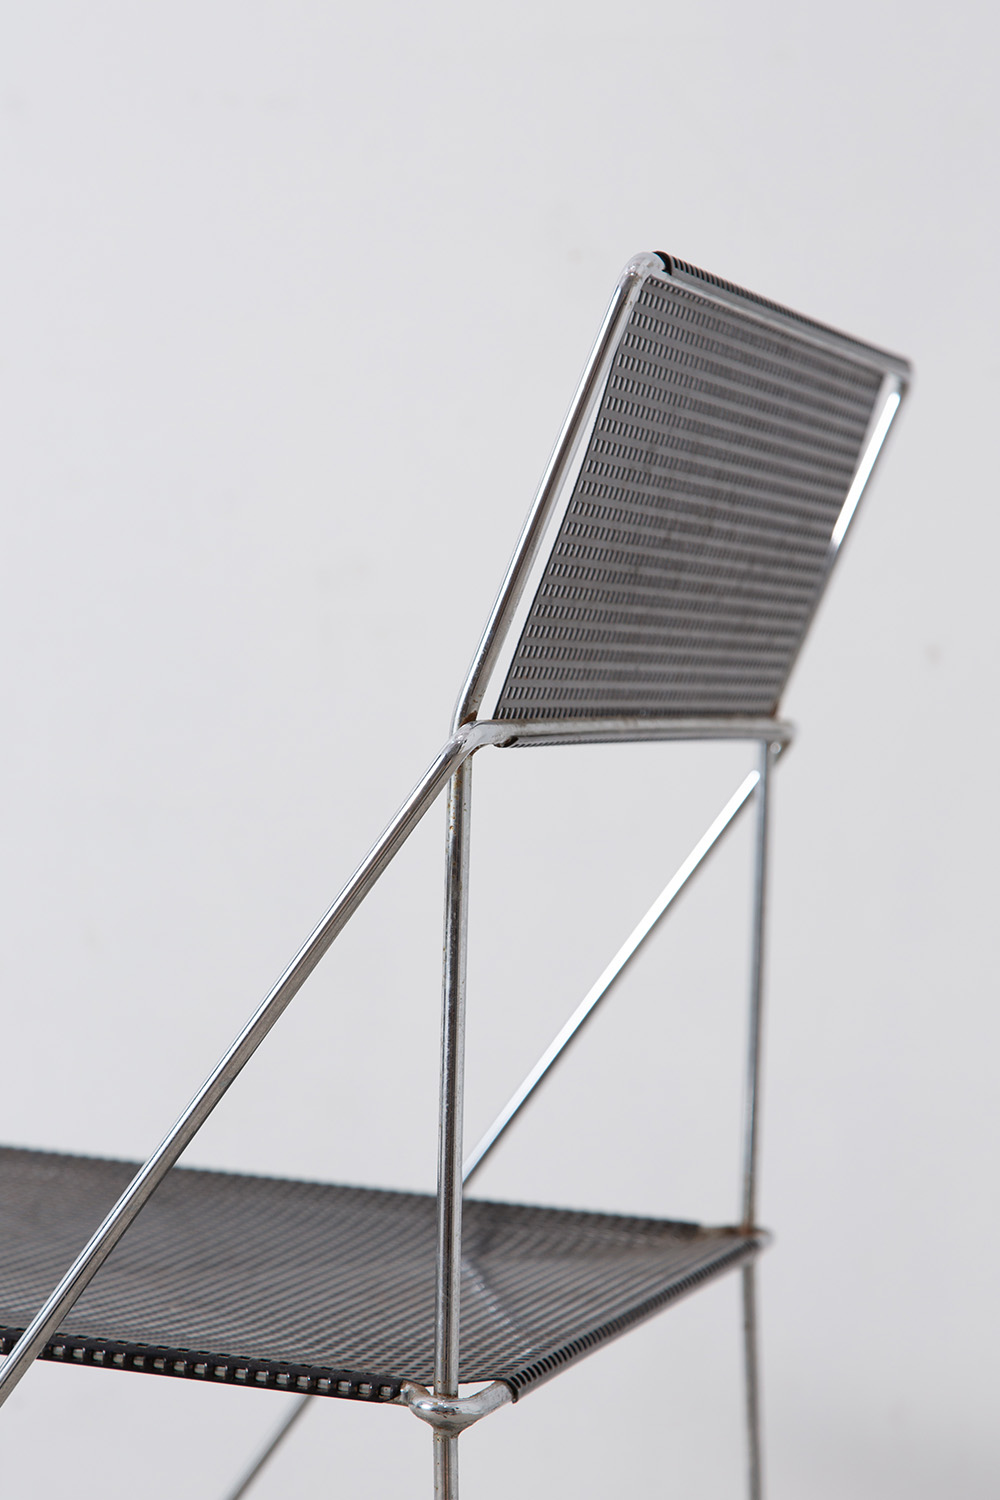 stoop | X-LINE Chair by Niels Jorgen Haugesen for HYBODAN